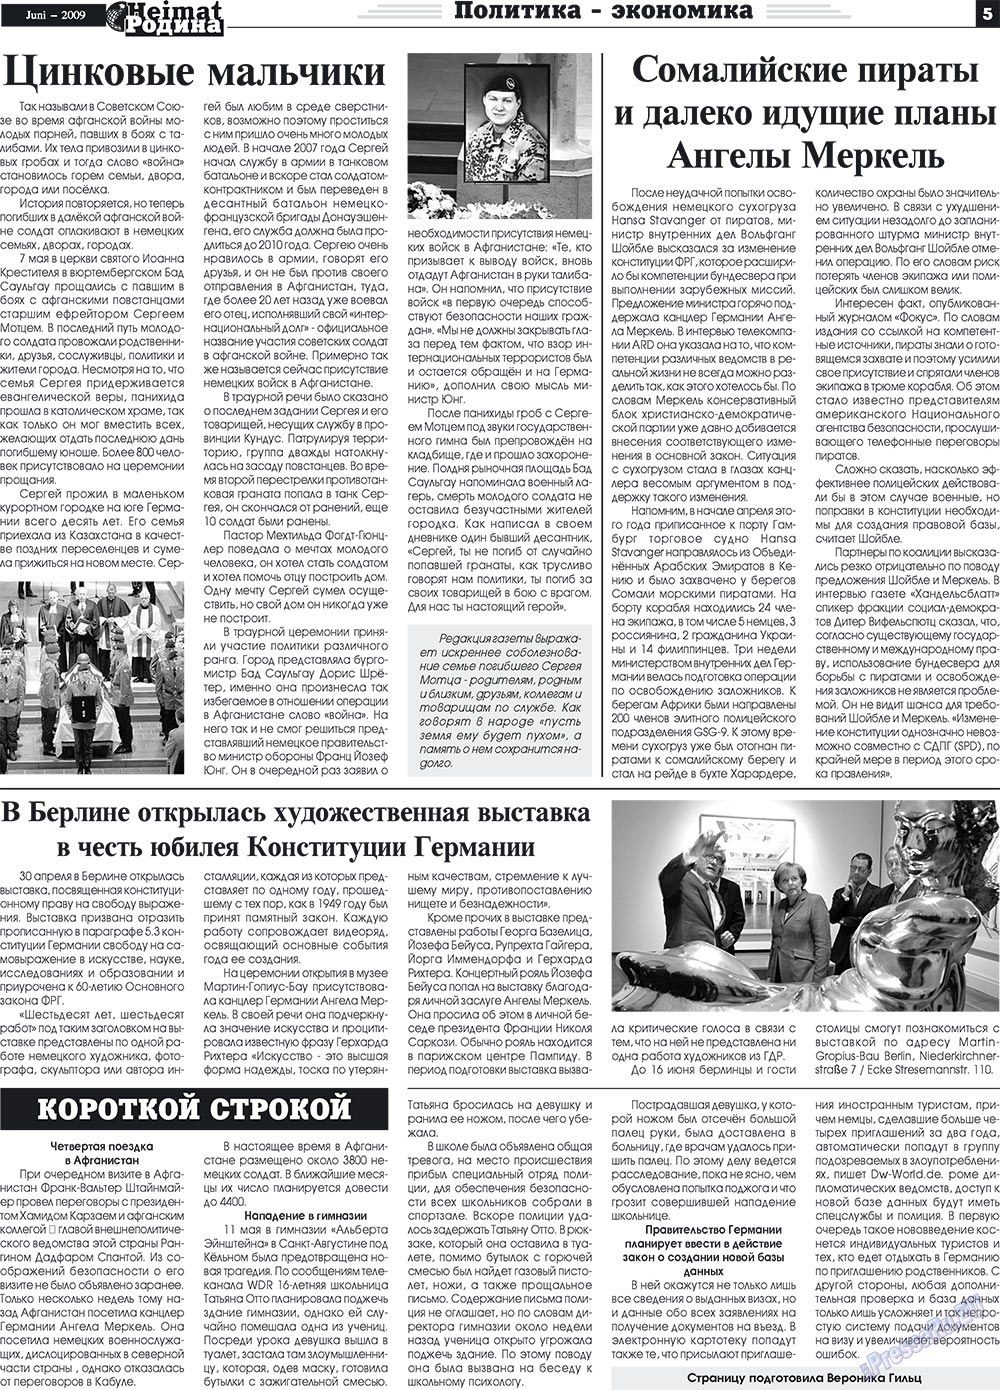 Heimat-Родина (газета). 2009 год, номер 6, стр. 5